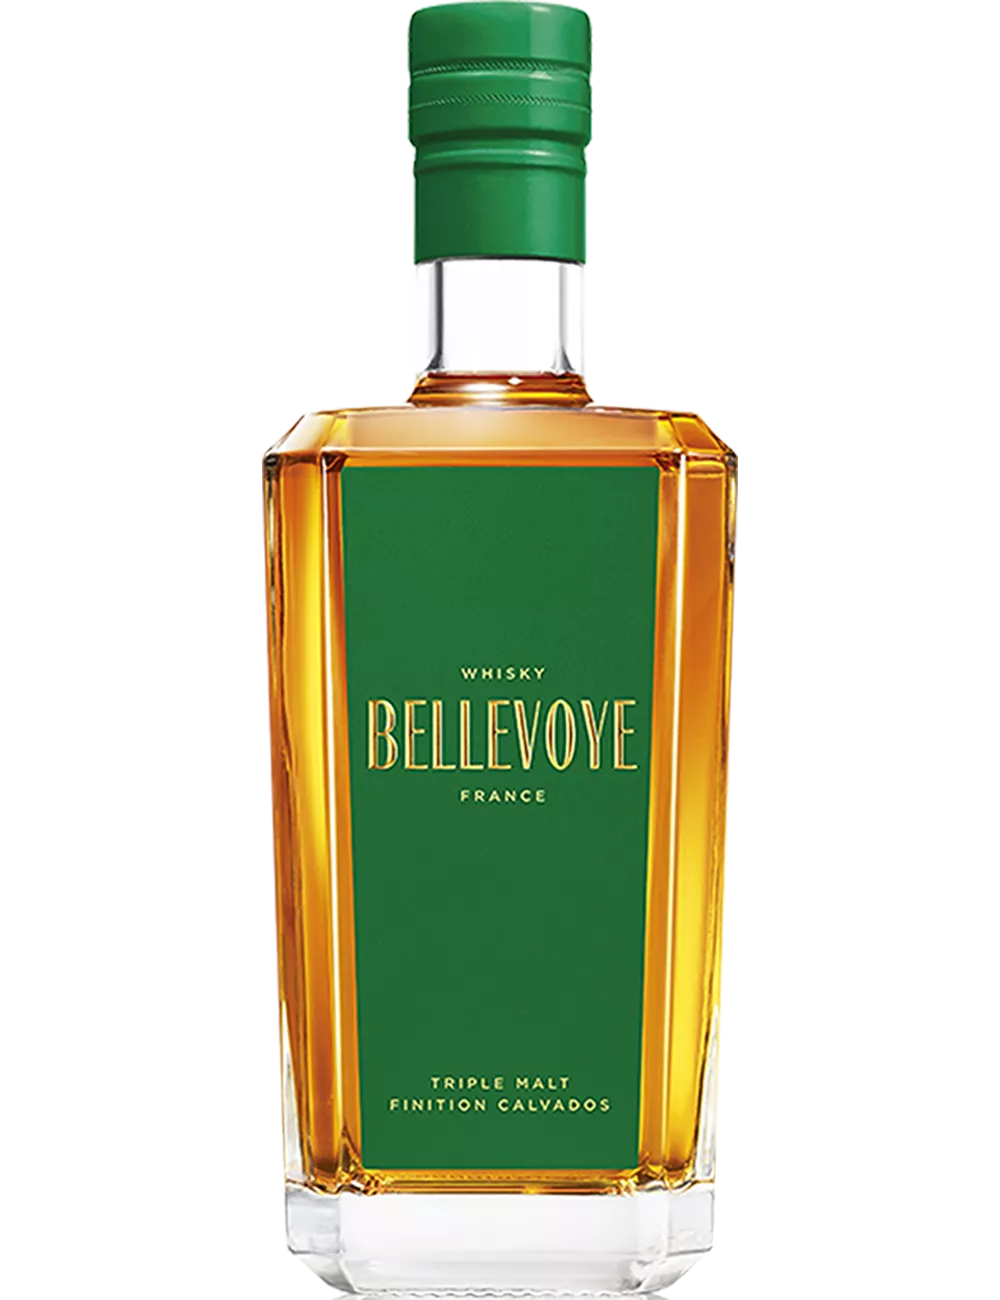 Bellevoye Vert - Whisky